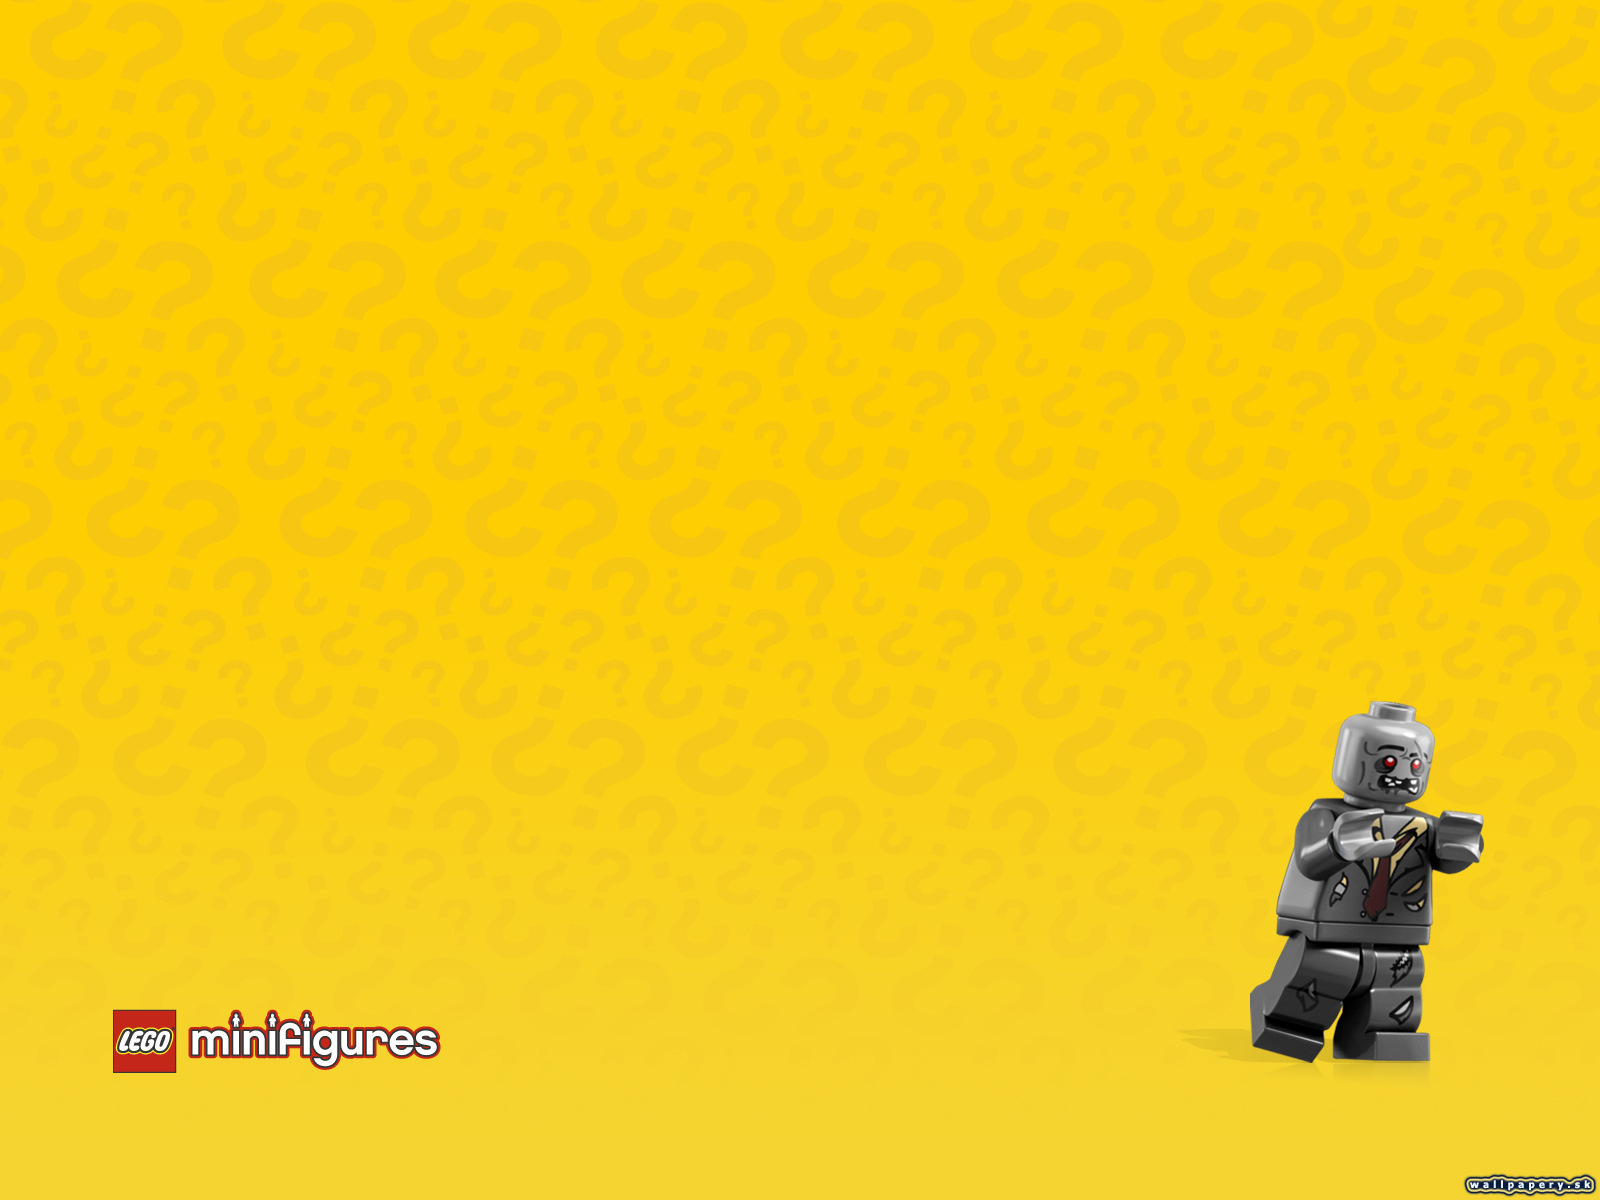 LEGO Minifigures Online - wallpaper 52